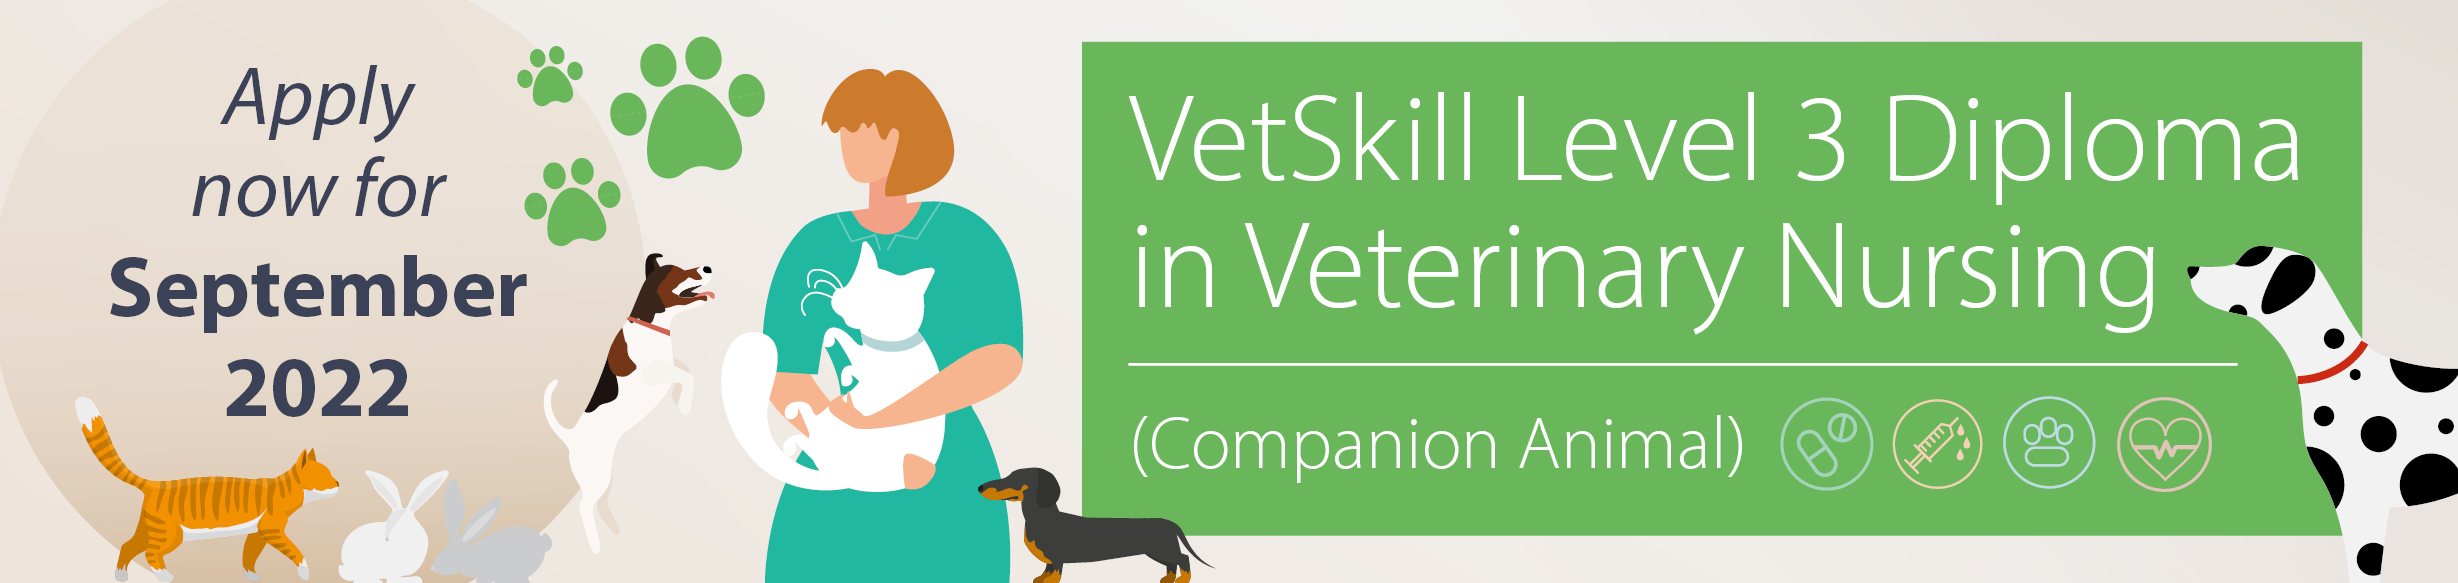 Start studying the Level 3 Diploma in Veterinary Nursing in September 2022